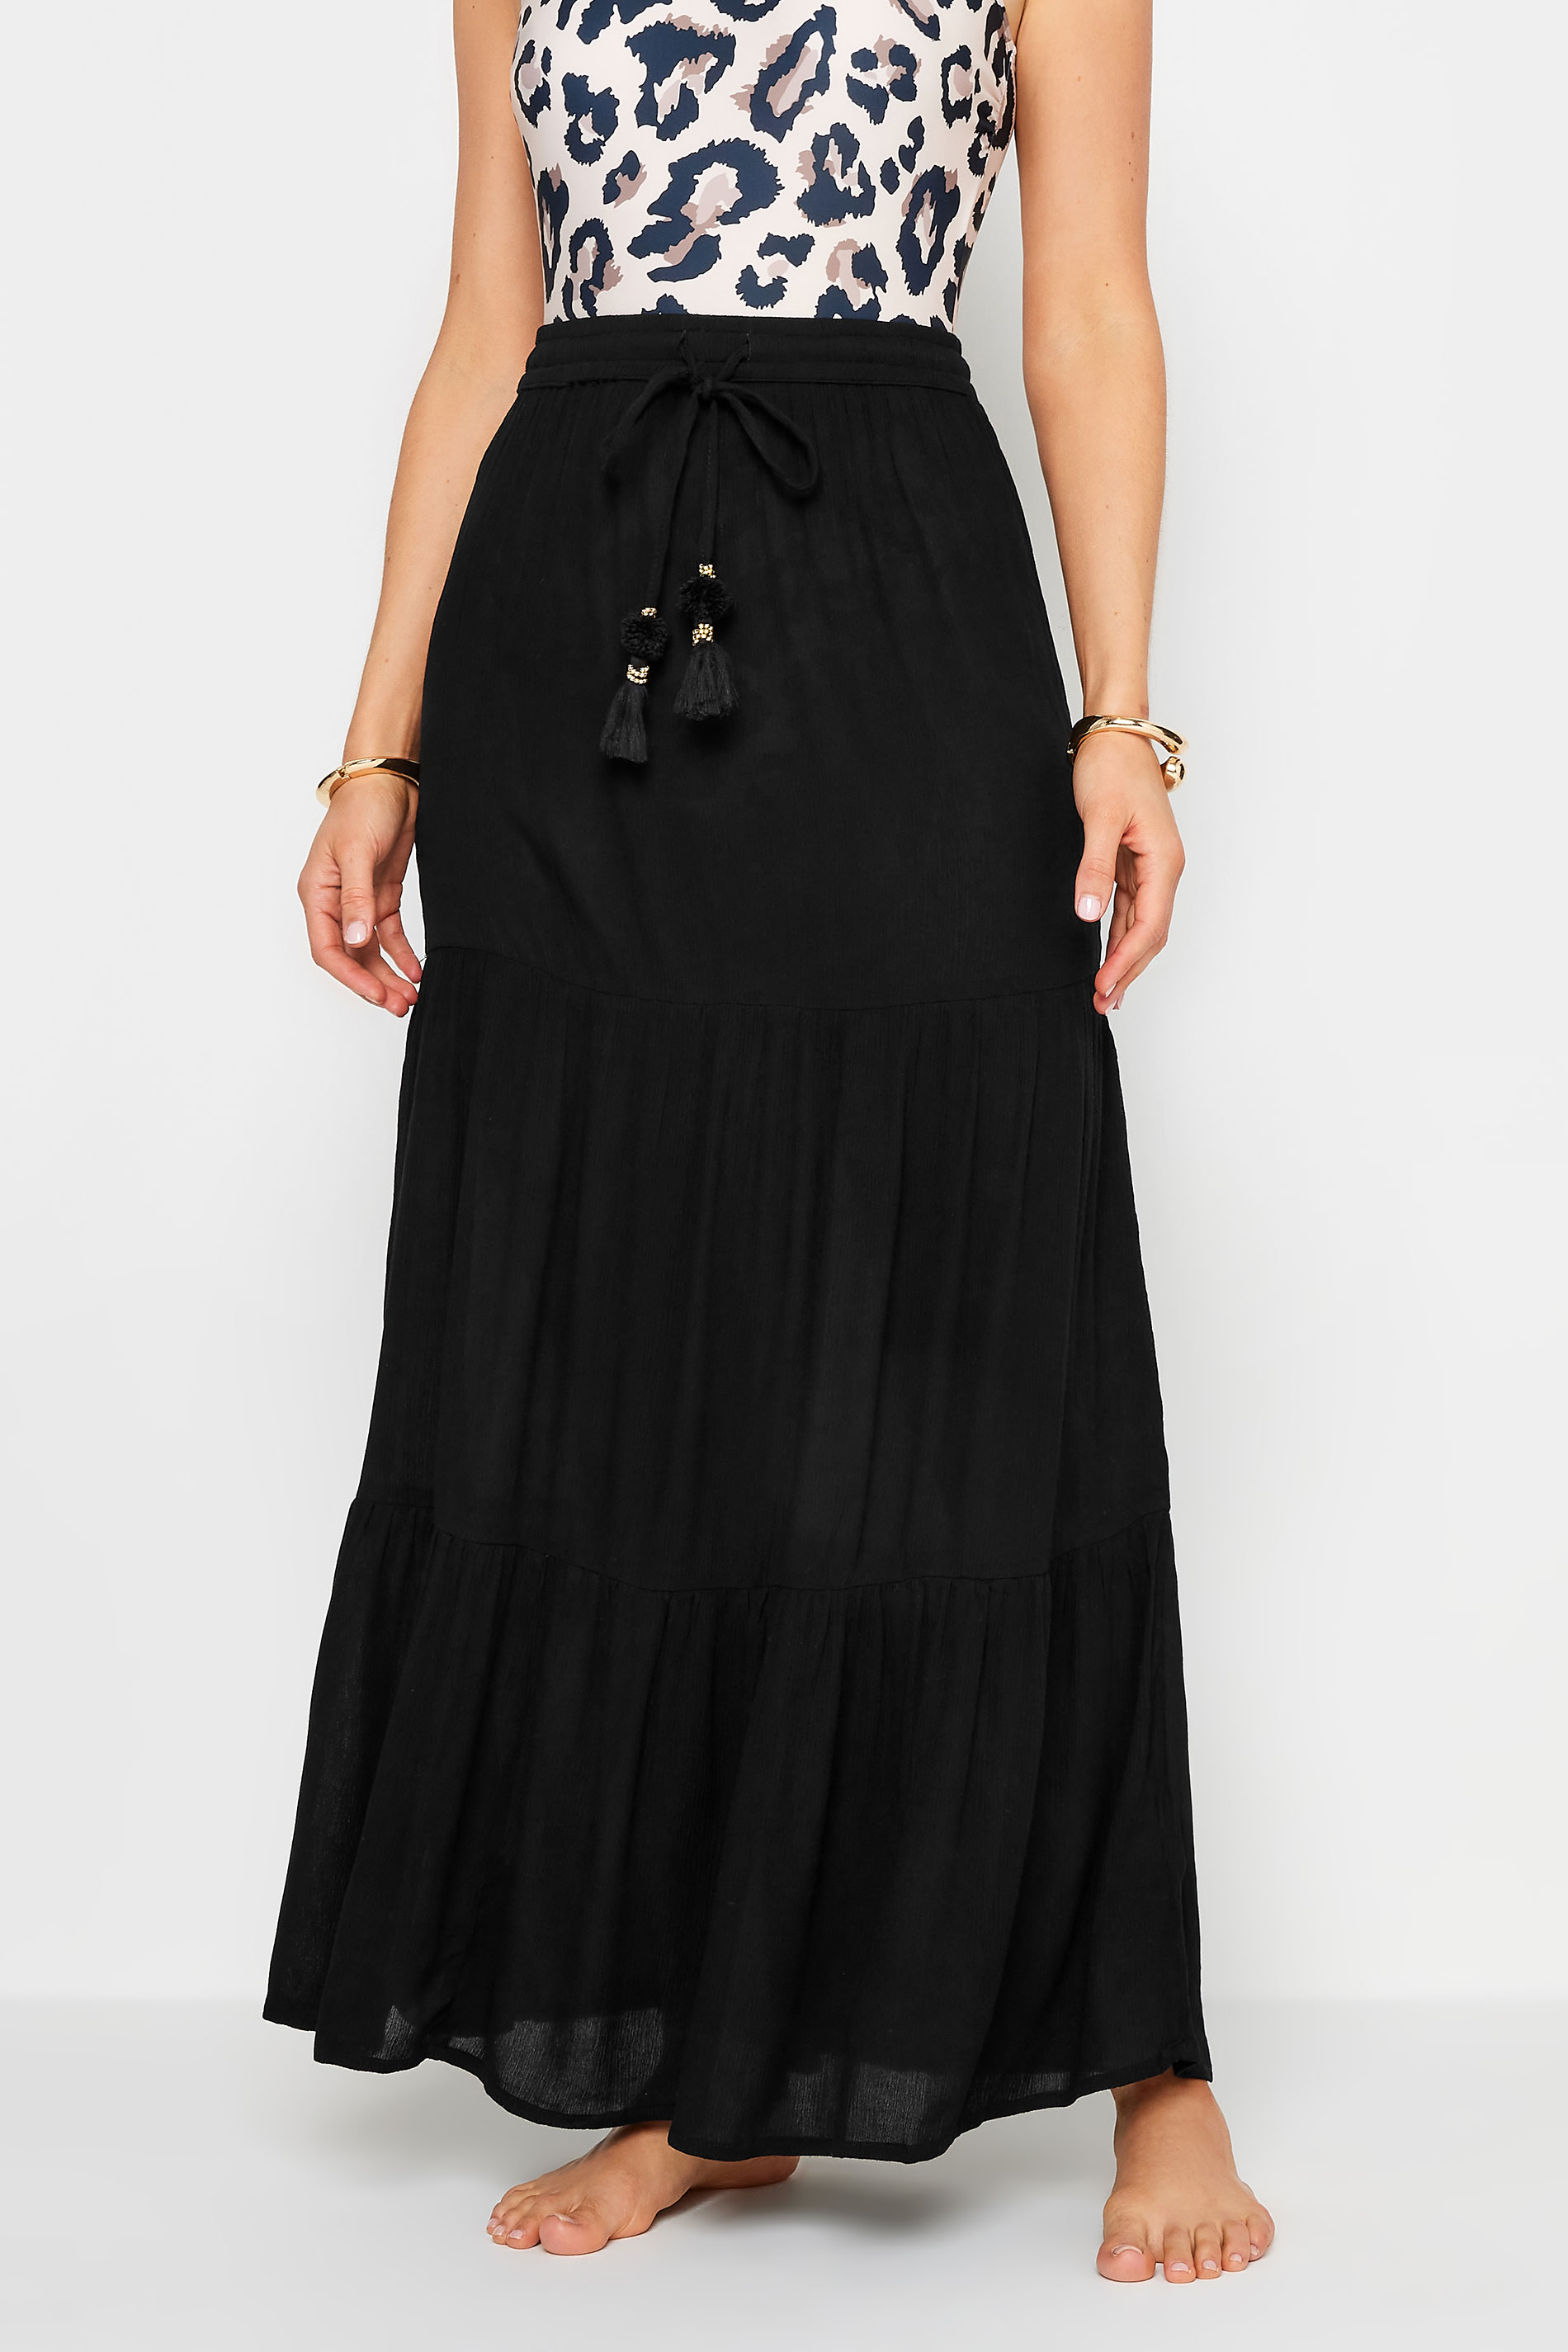 LTS Tall Women's Black Textured Tie Waist Maxi Skirt | Long Tall Sally 2